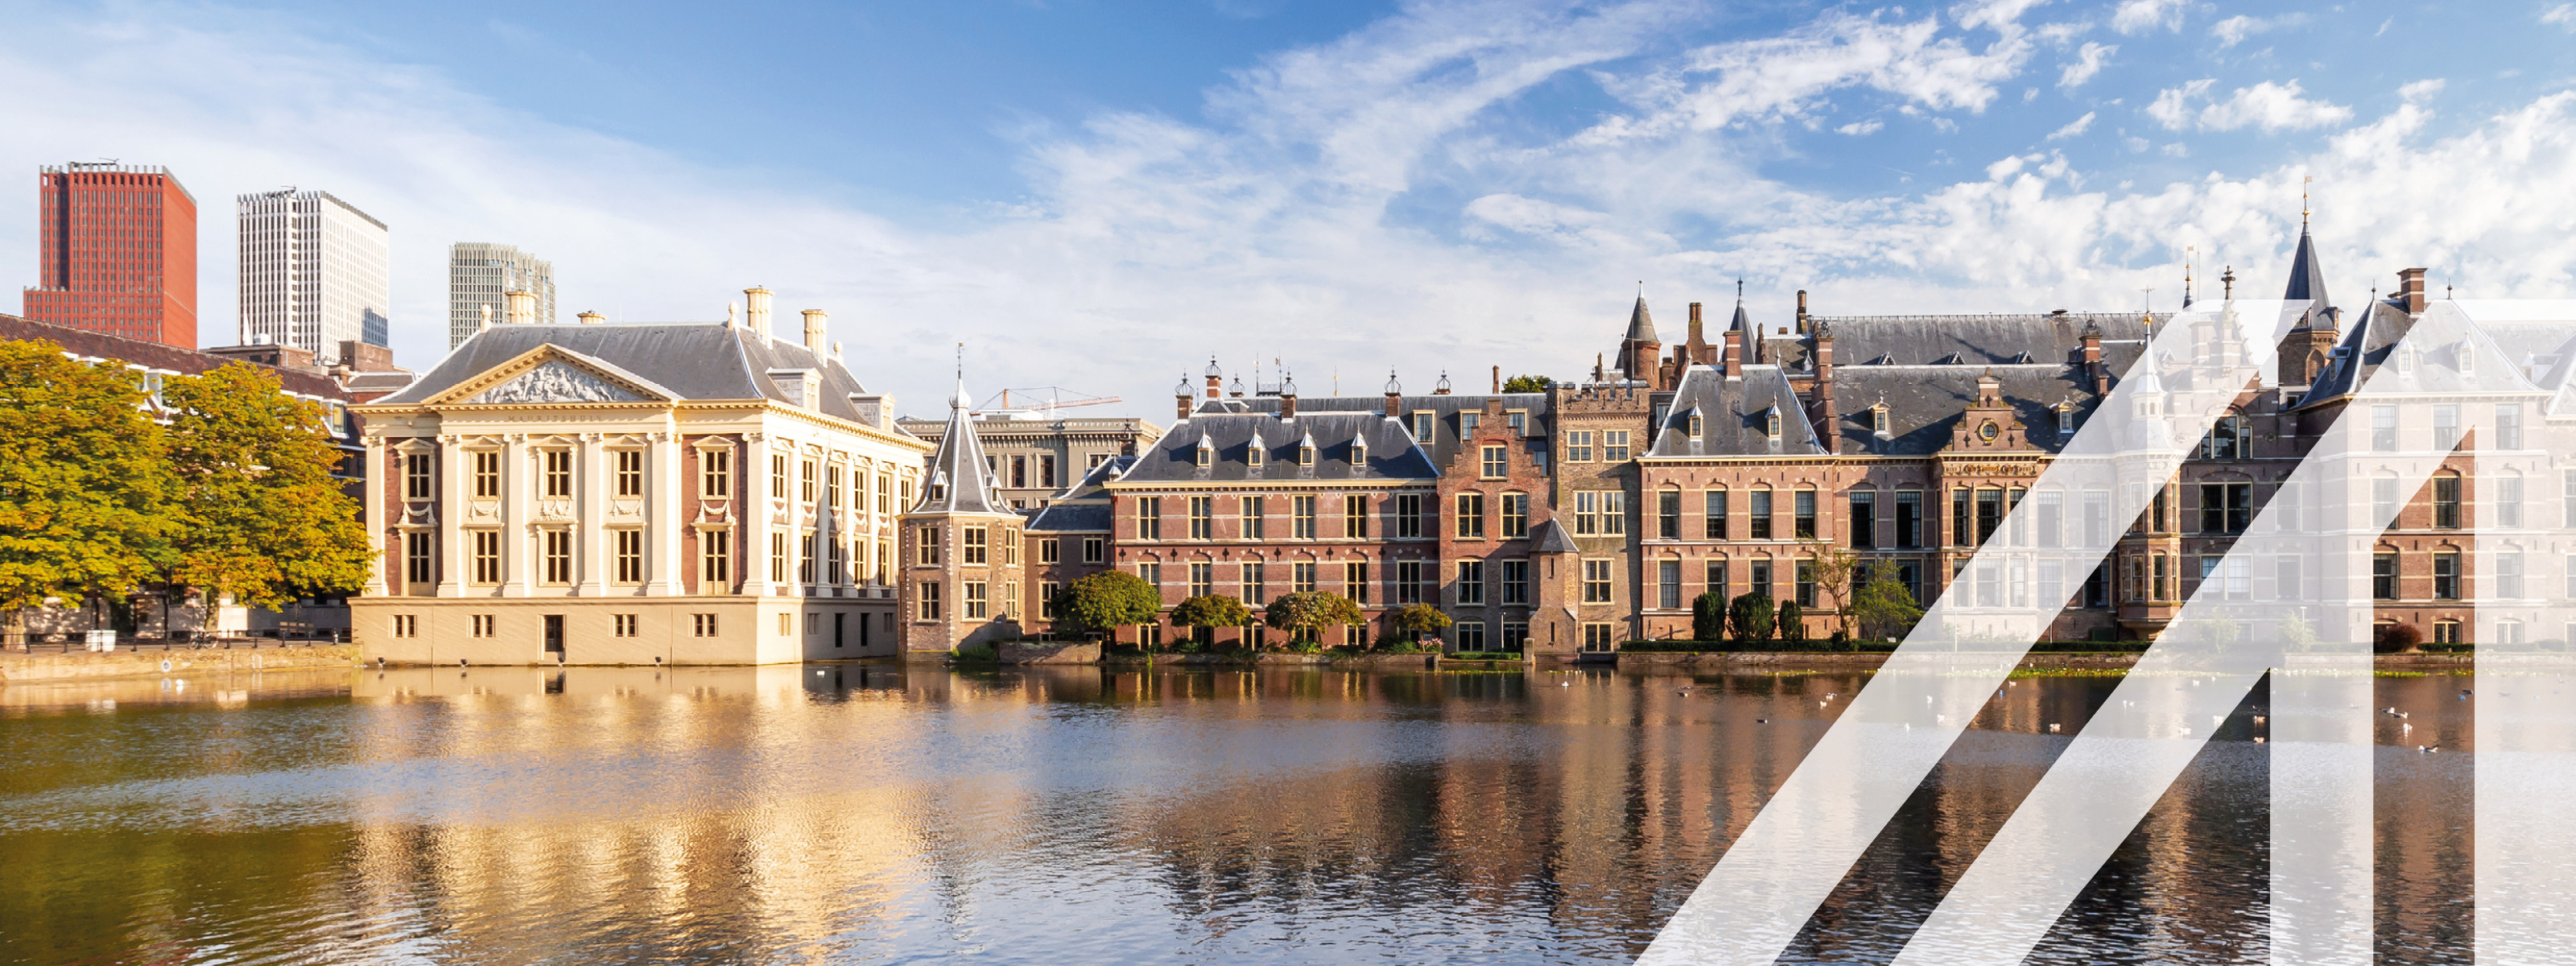 Blick auf den Binnenhof, das niederländische Parlament in Den Haag, historische Häuser gelegen am Wasser unter blauem Himmel. Über das Bild wurde ein weißes Austria A gelegt.